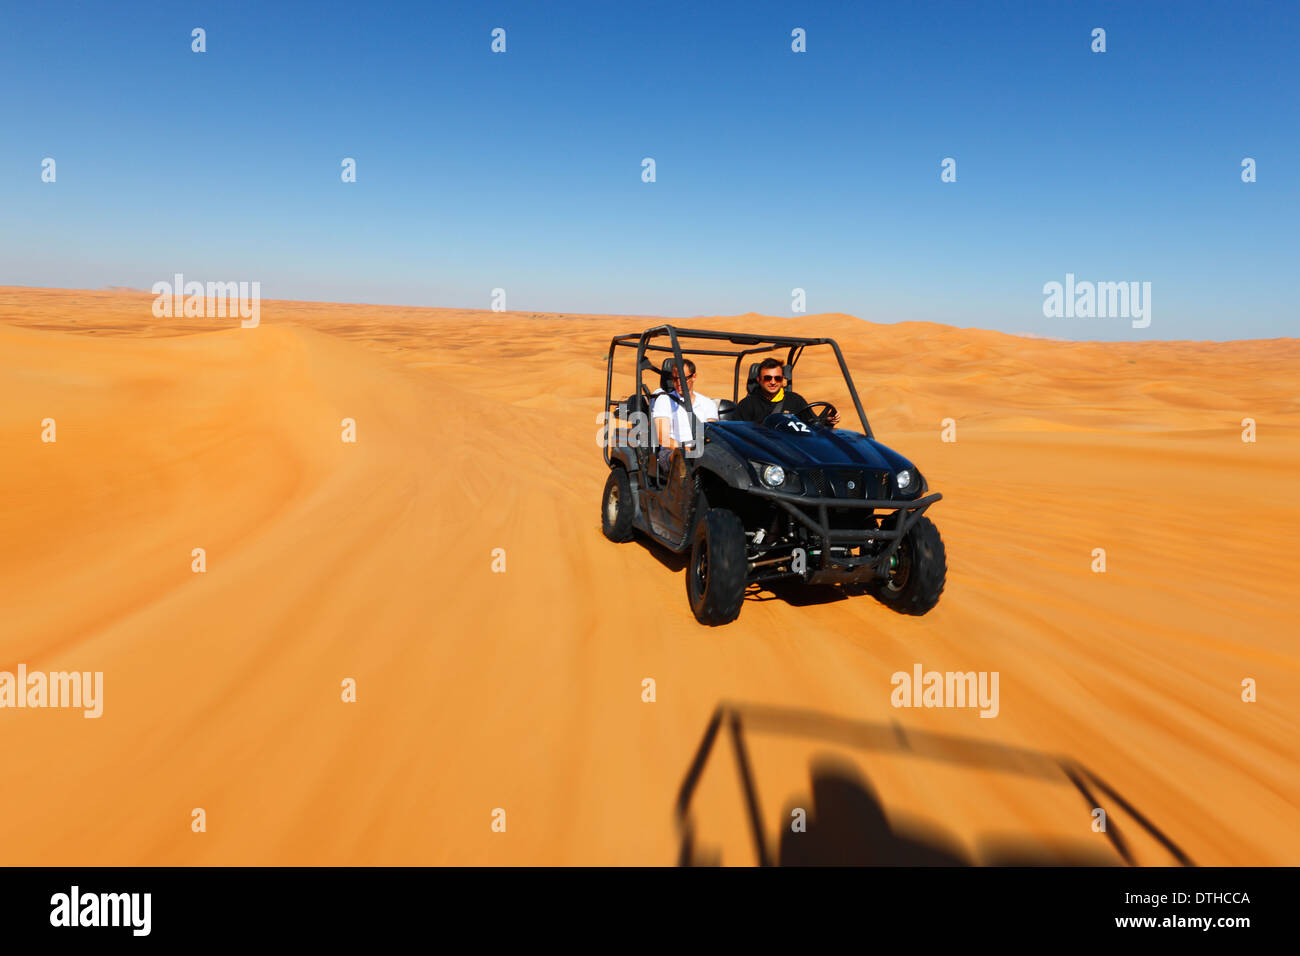 Quad driving in Dubai desert Stock Photo